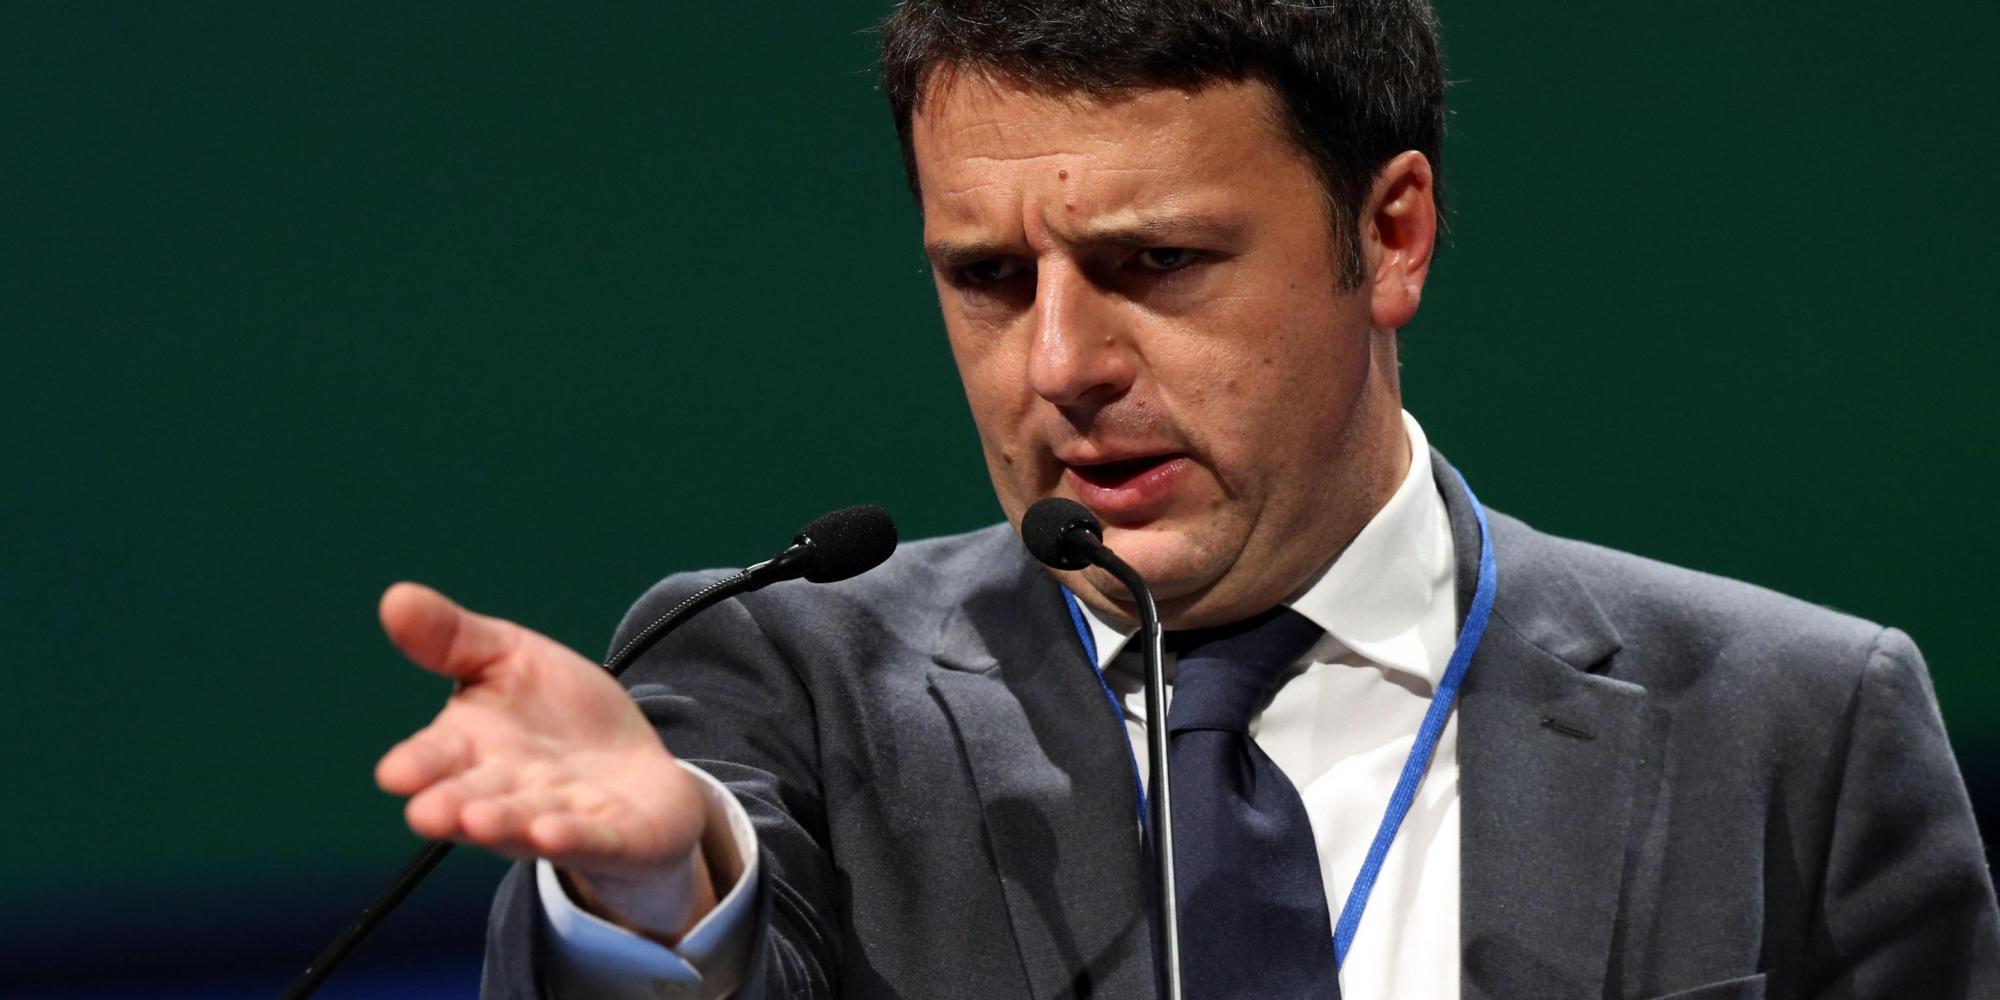 Il referendum slitta a novembre, Mattarella spinge per rimettere ordine nella legge elettorale